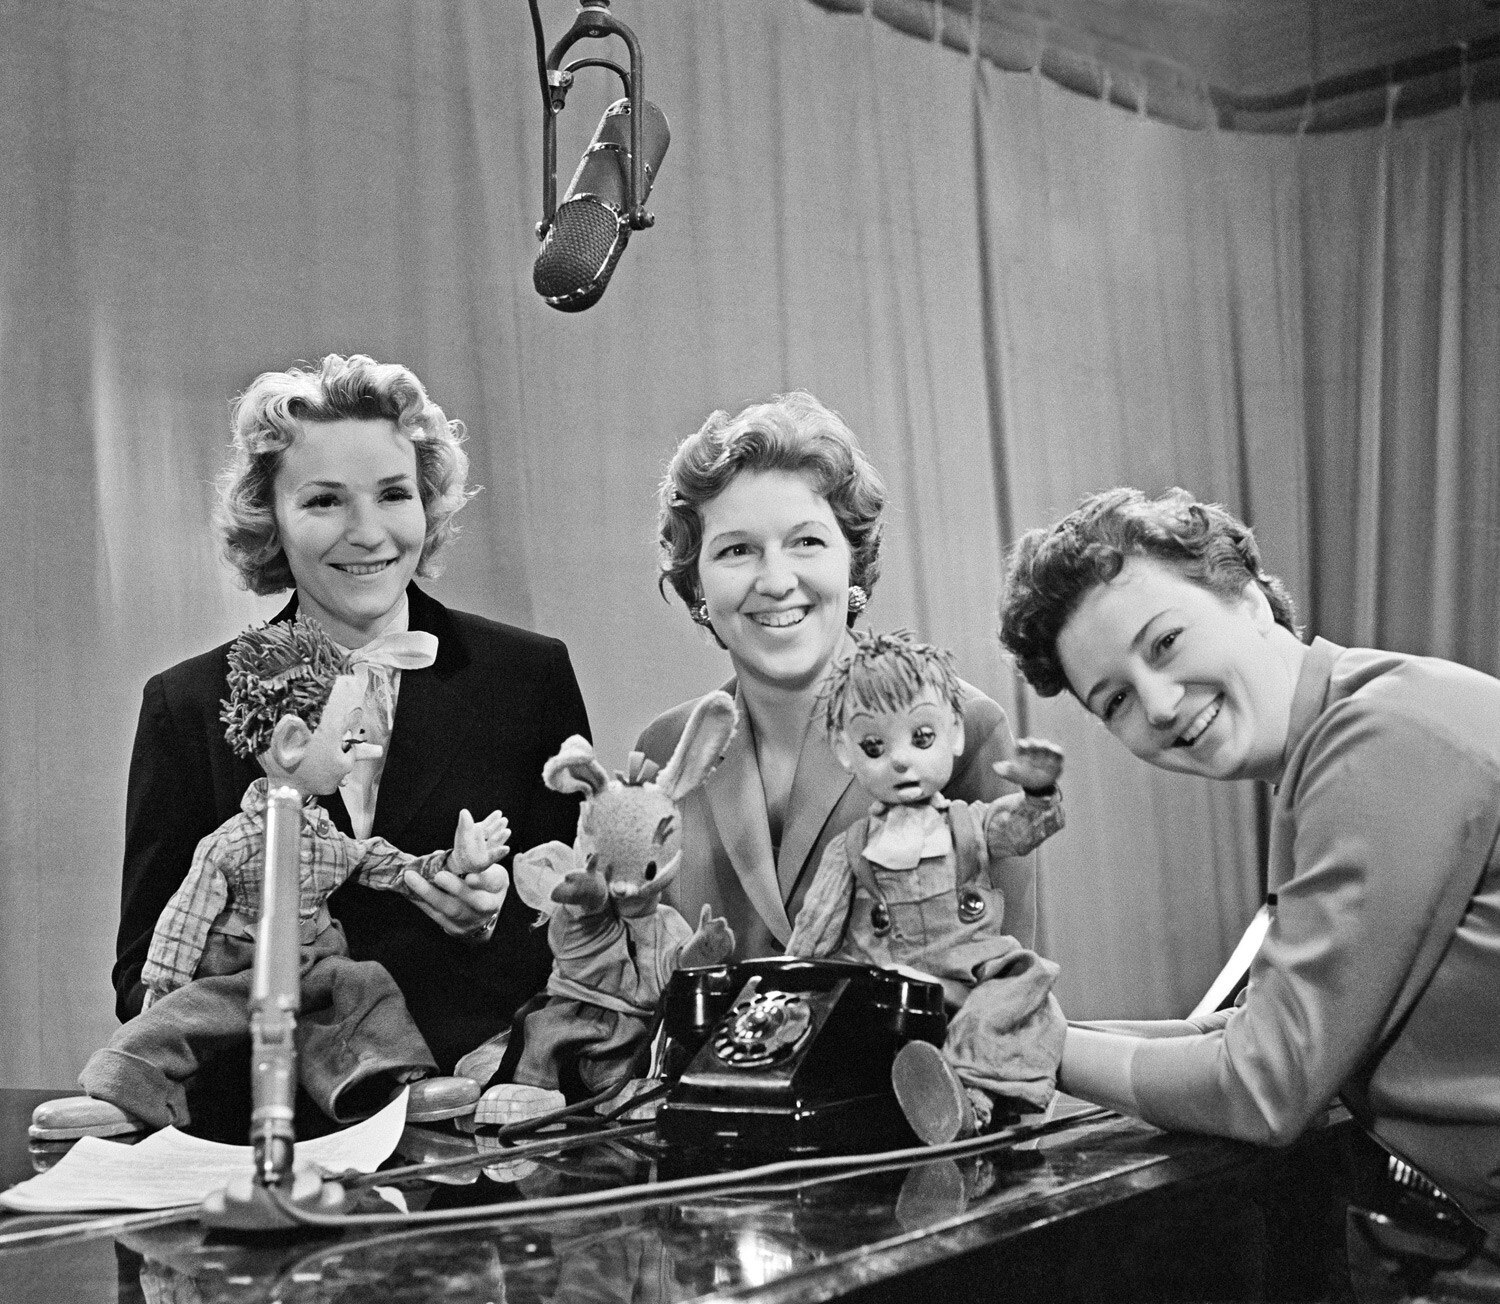 Les animatrices de télévision soviétique Anna Chilova, Valentina Leontieva et Nina Kondratova sont photographiées pendant le tournage de Bonne nuit les petits!.